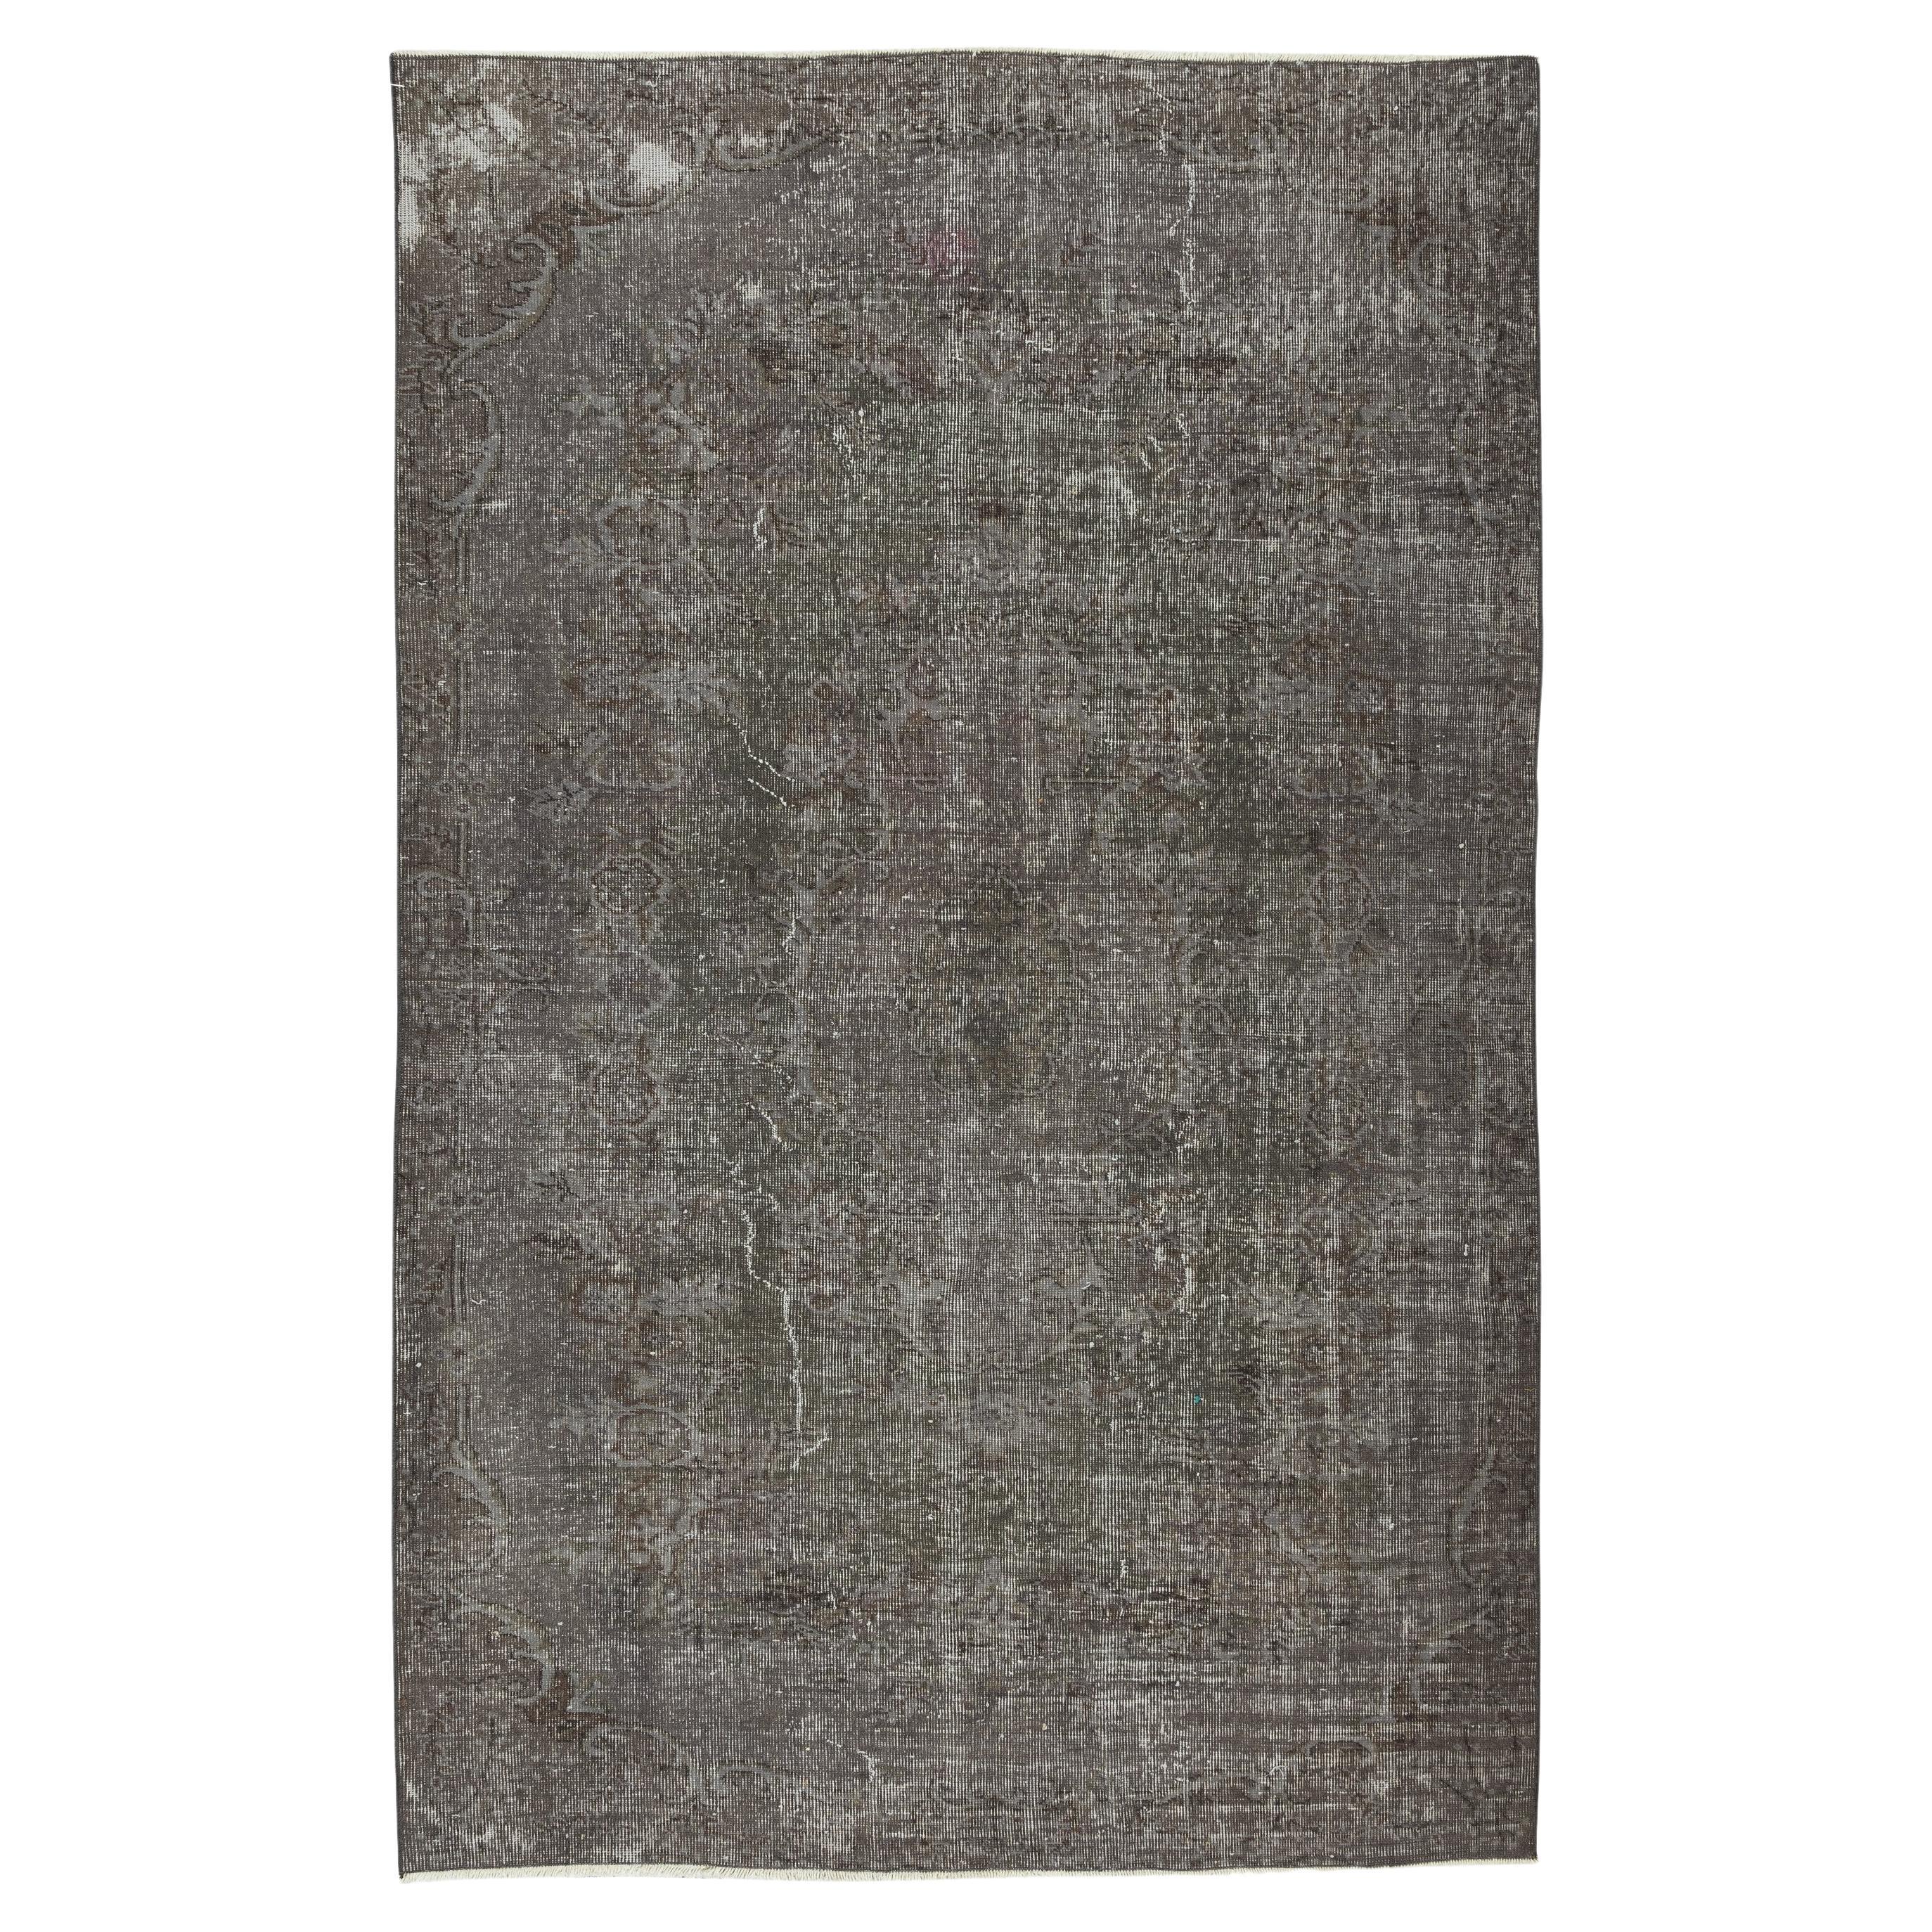 5.6x8.7 Ft Grauer Teppich für moderne Inneneinrichtung. Handgefertigt in der Türkei. Vintage-Teppich